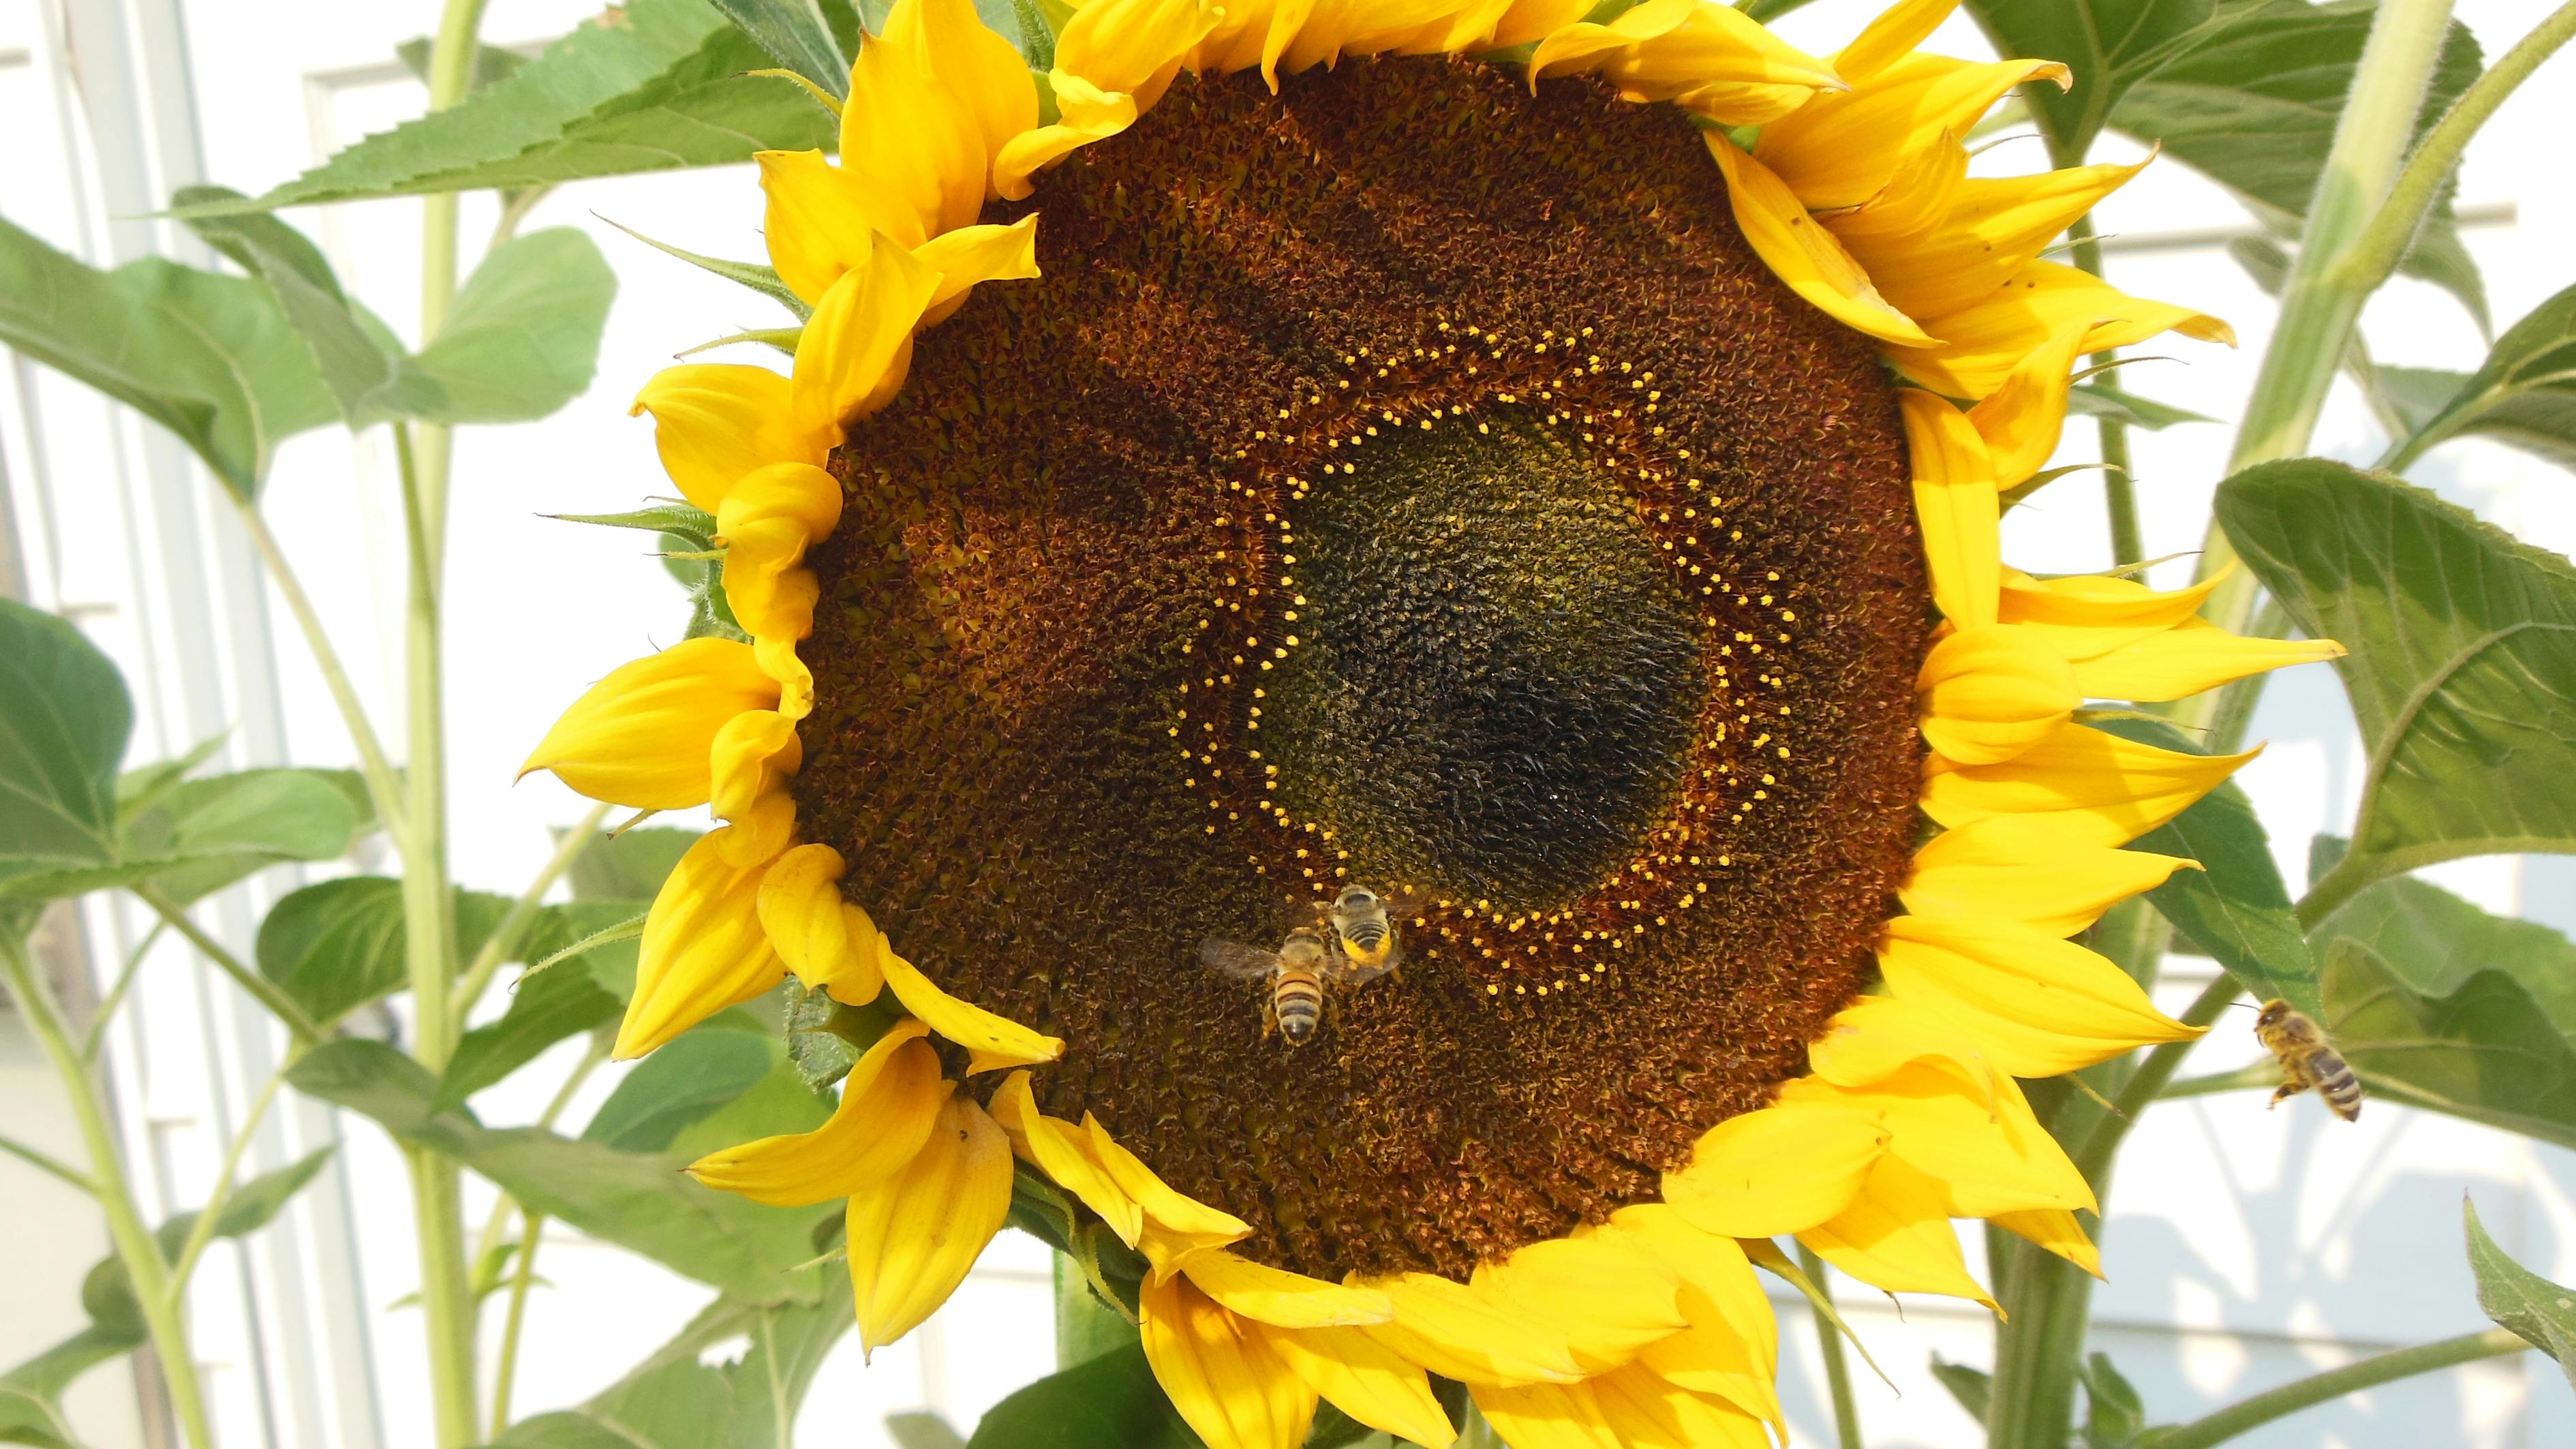 蜂蜜和向日葵 库存图片. 图片 包括有 自然, 木头, 有机, 产品, 蜂蜜, 北斗七星, 成份, 金子 - 36308377